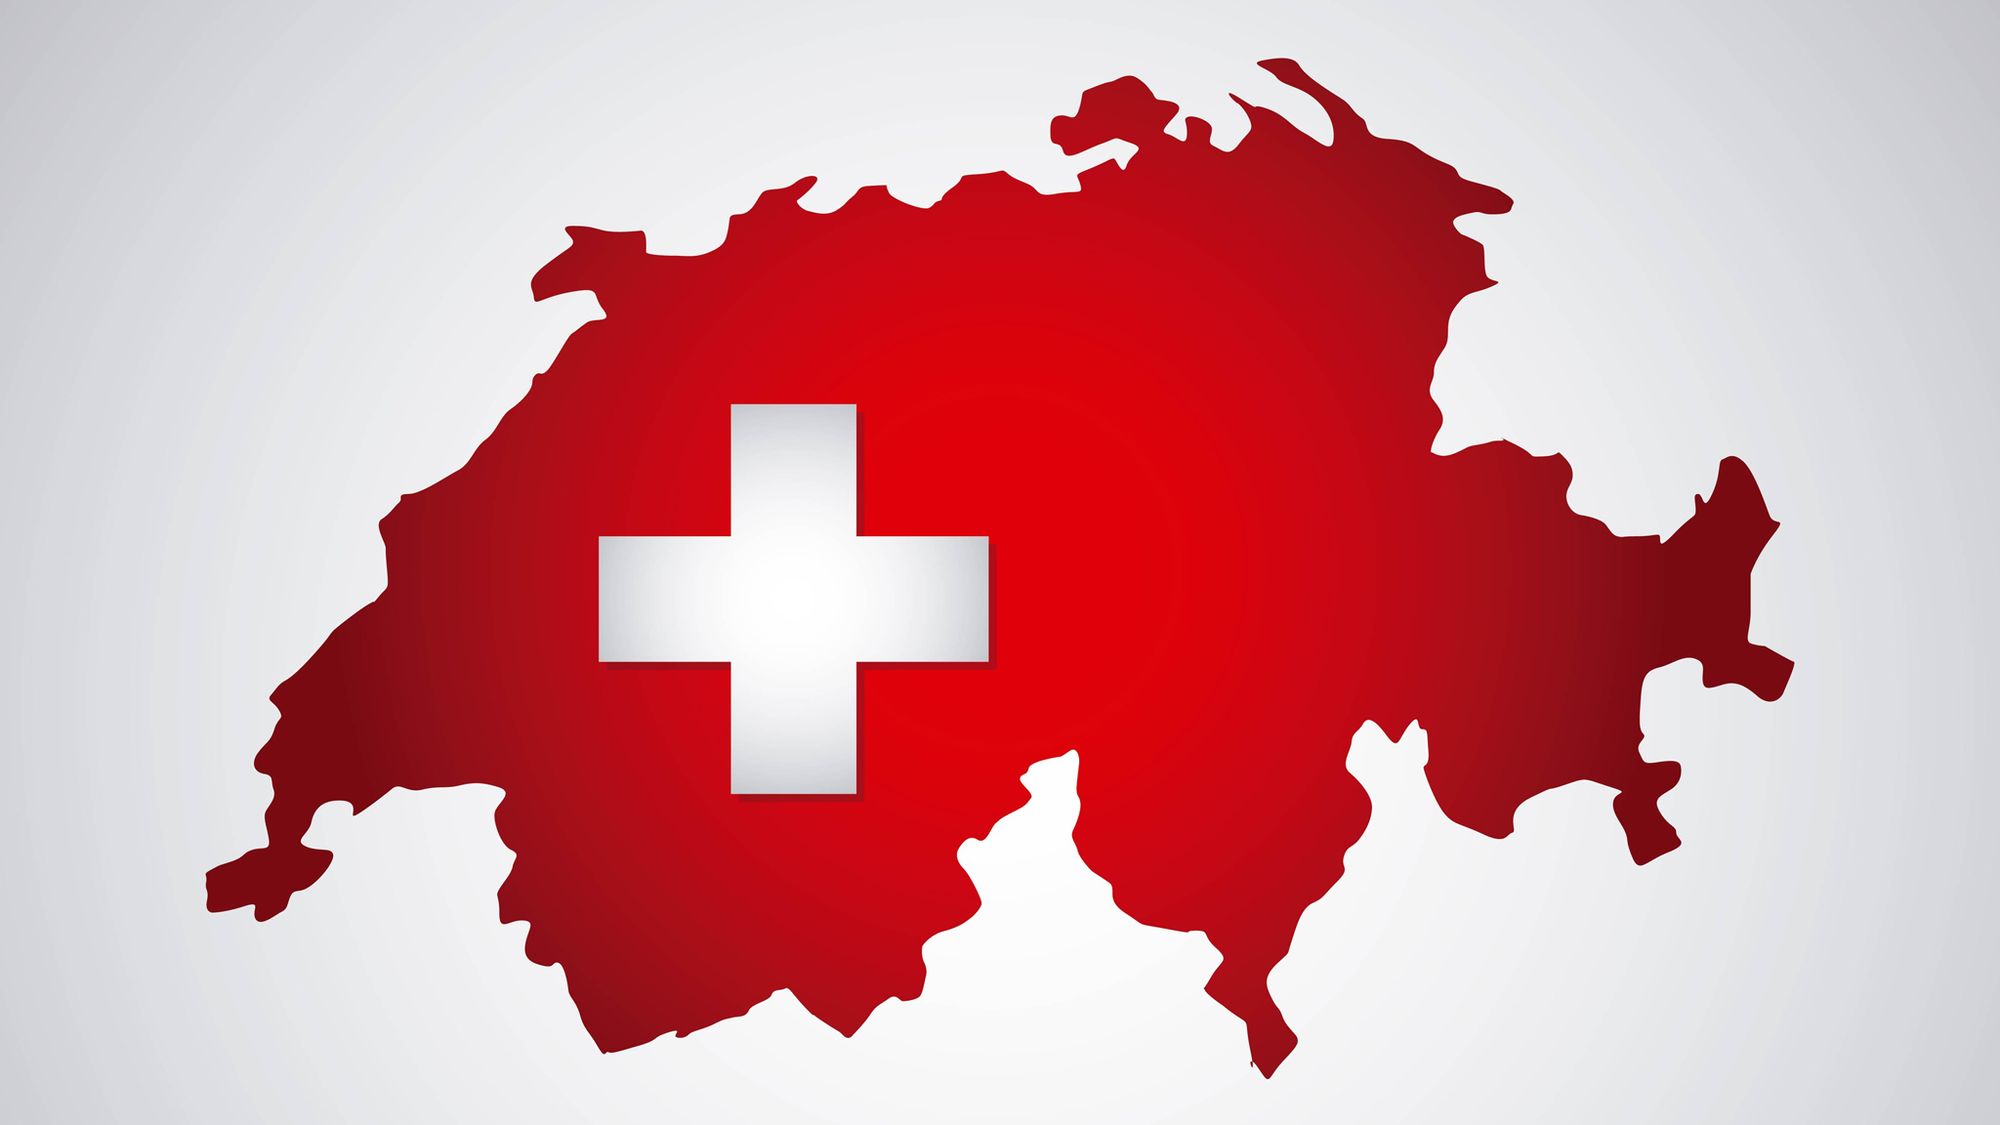 Das schweiz. Швейцария швейцарская Конфедерация. Флаг Швейцарии. Швейцария на карте. Швейцарский диалект немецкого языка.